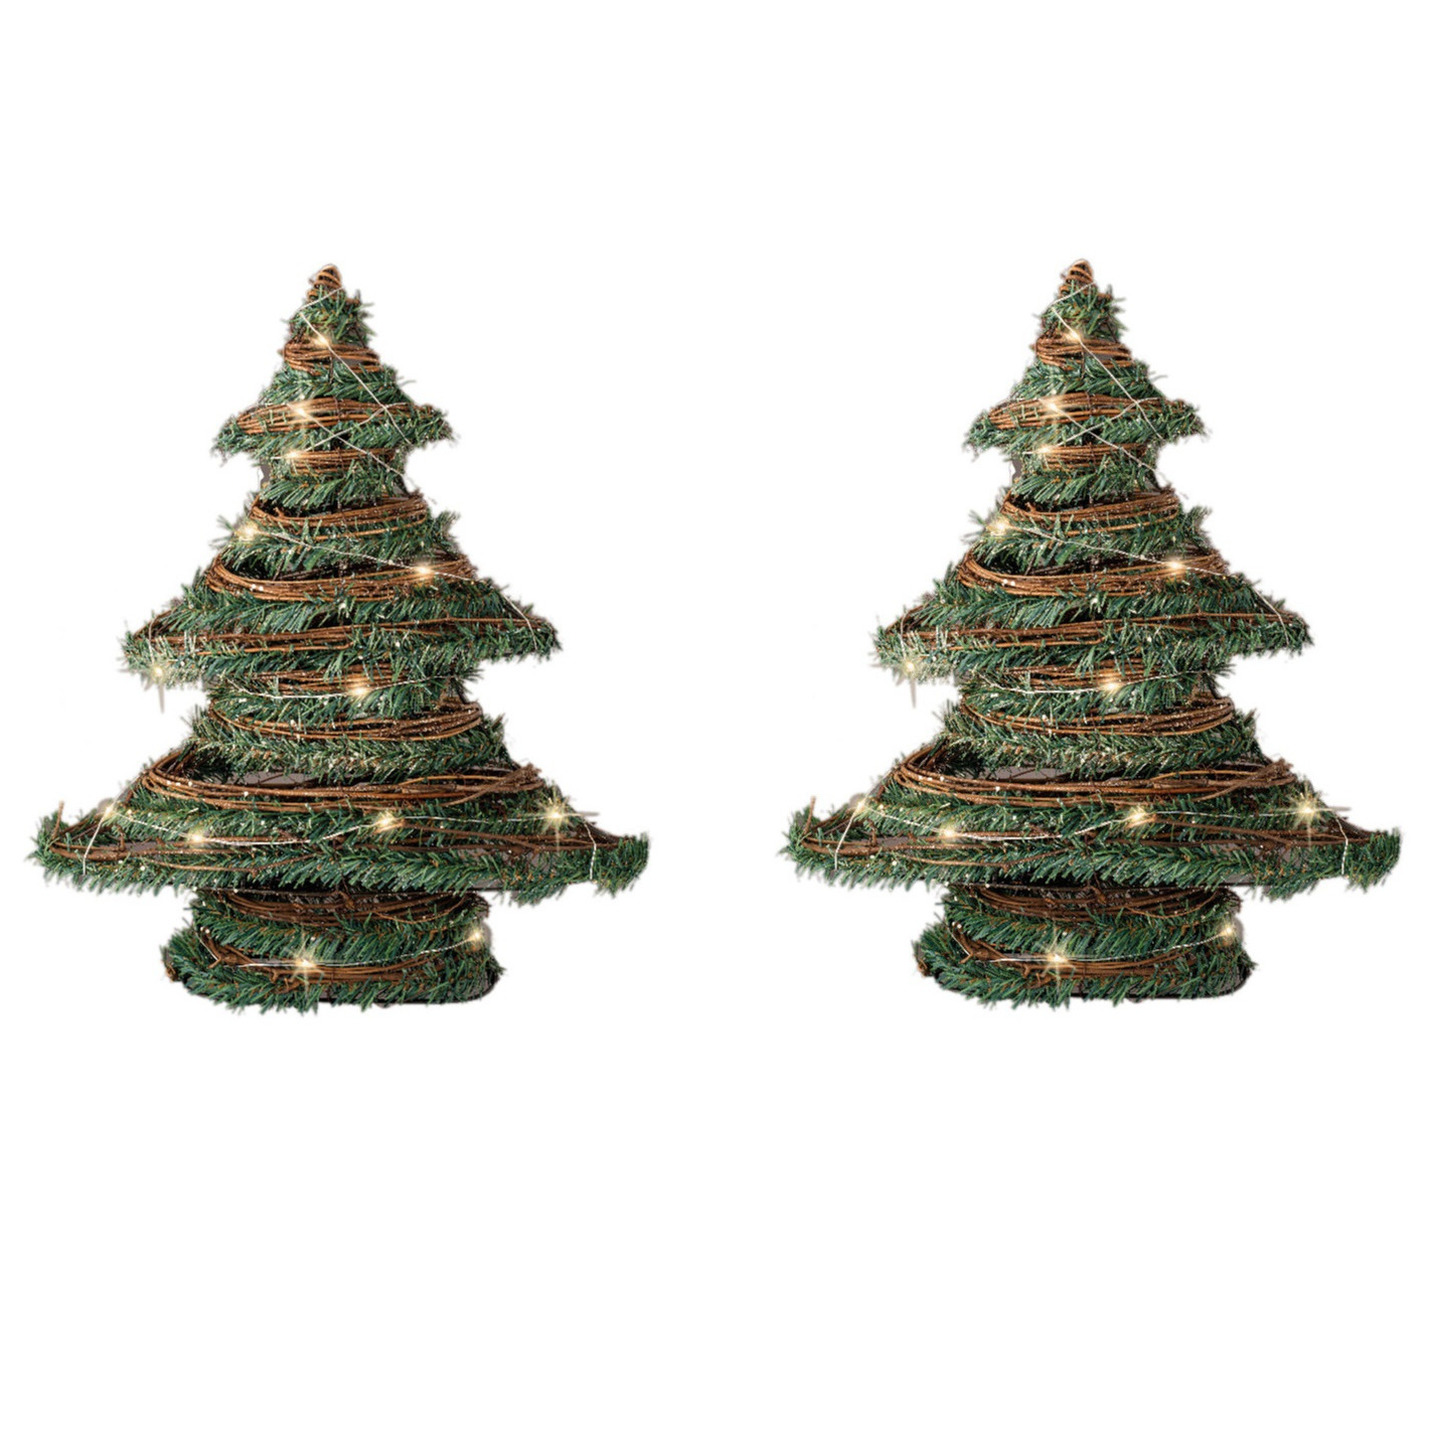 2x stuks kerstdecoratie rotan decoratie kerstboom groen met verlichting H40 cm